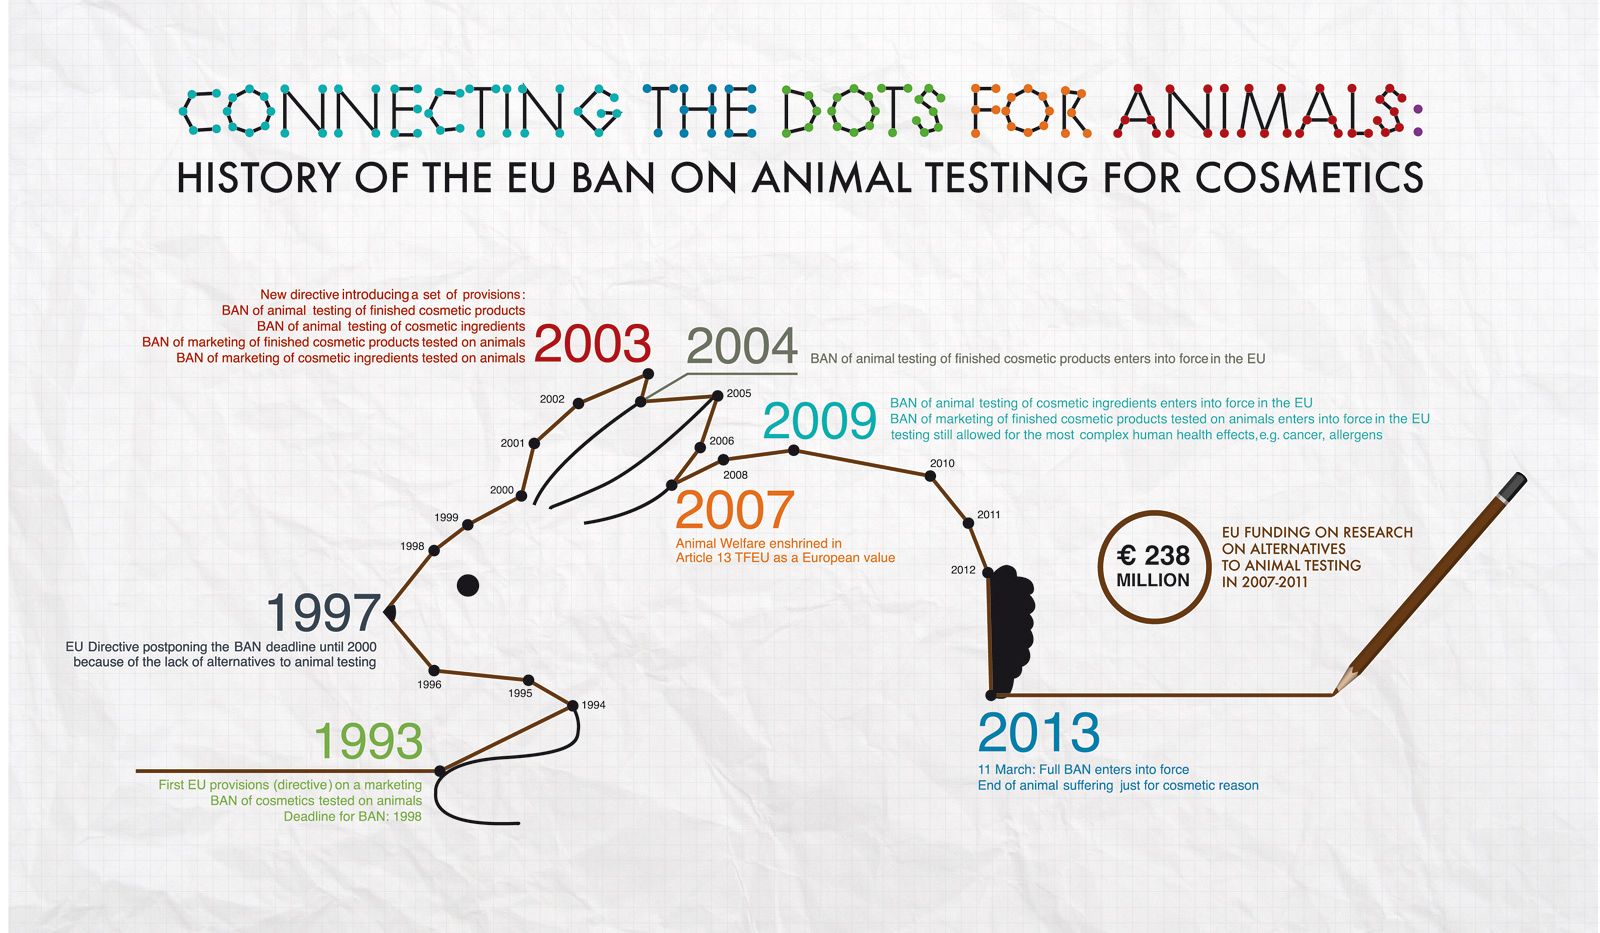 Historia de la prohibición de experimentar con animales en la UE